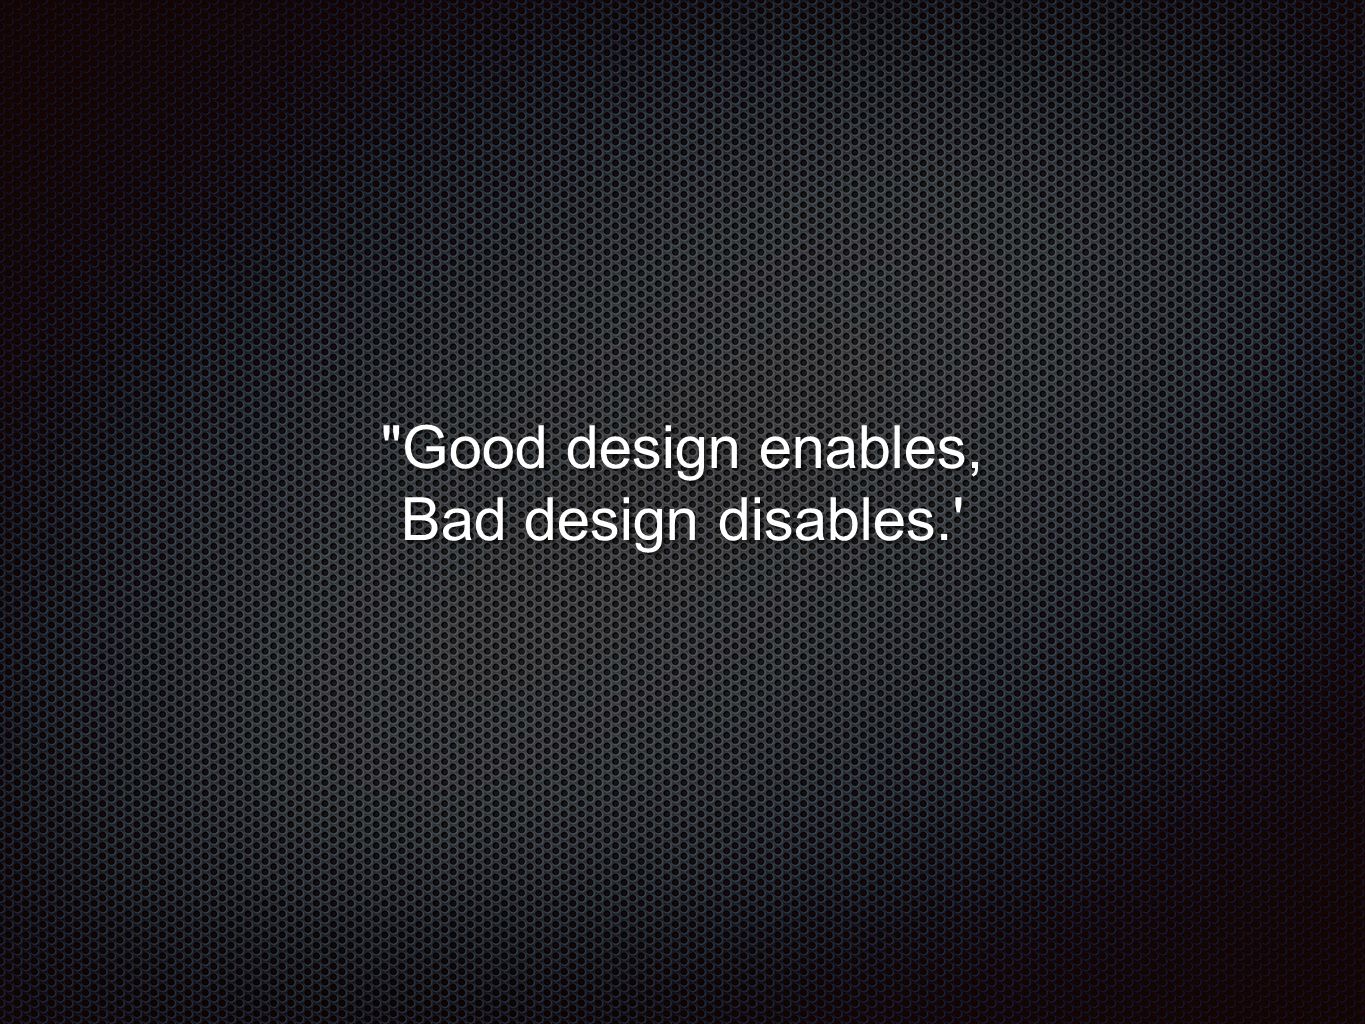 Good design enables, Bad design disables.